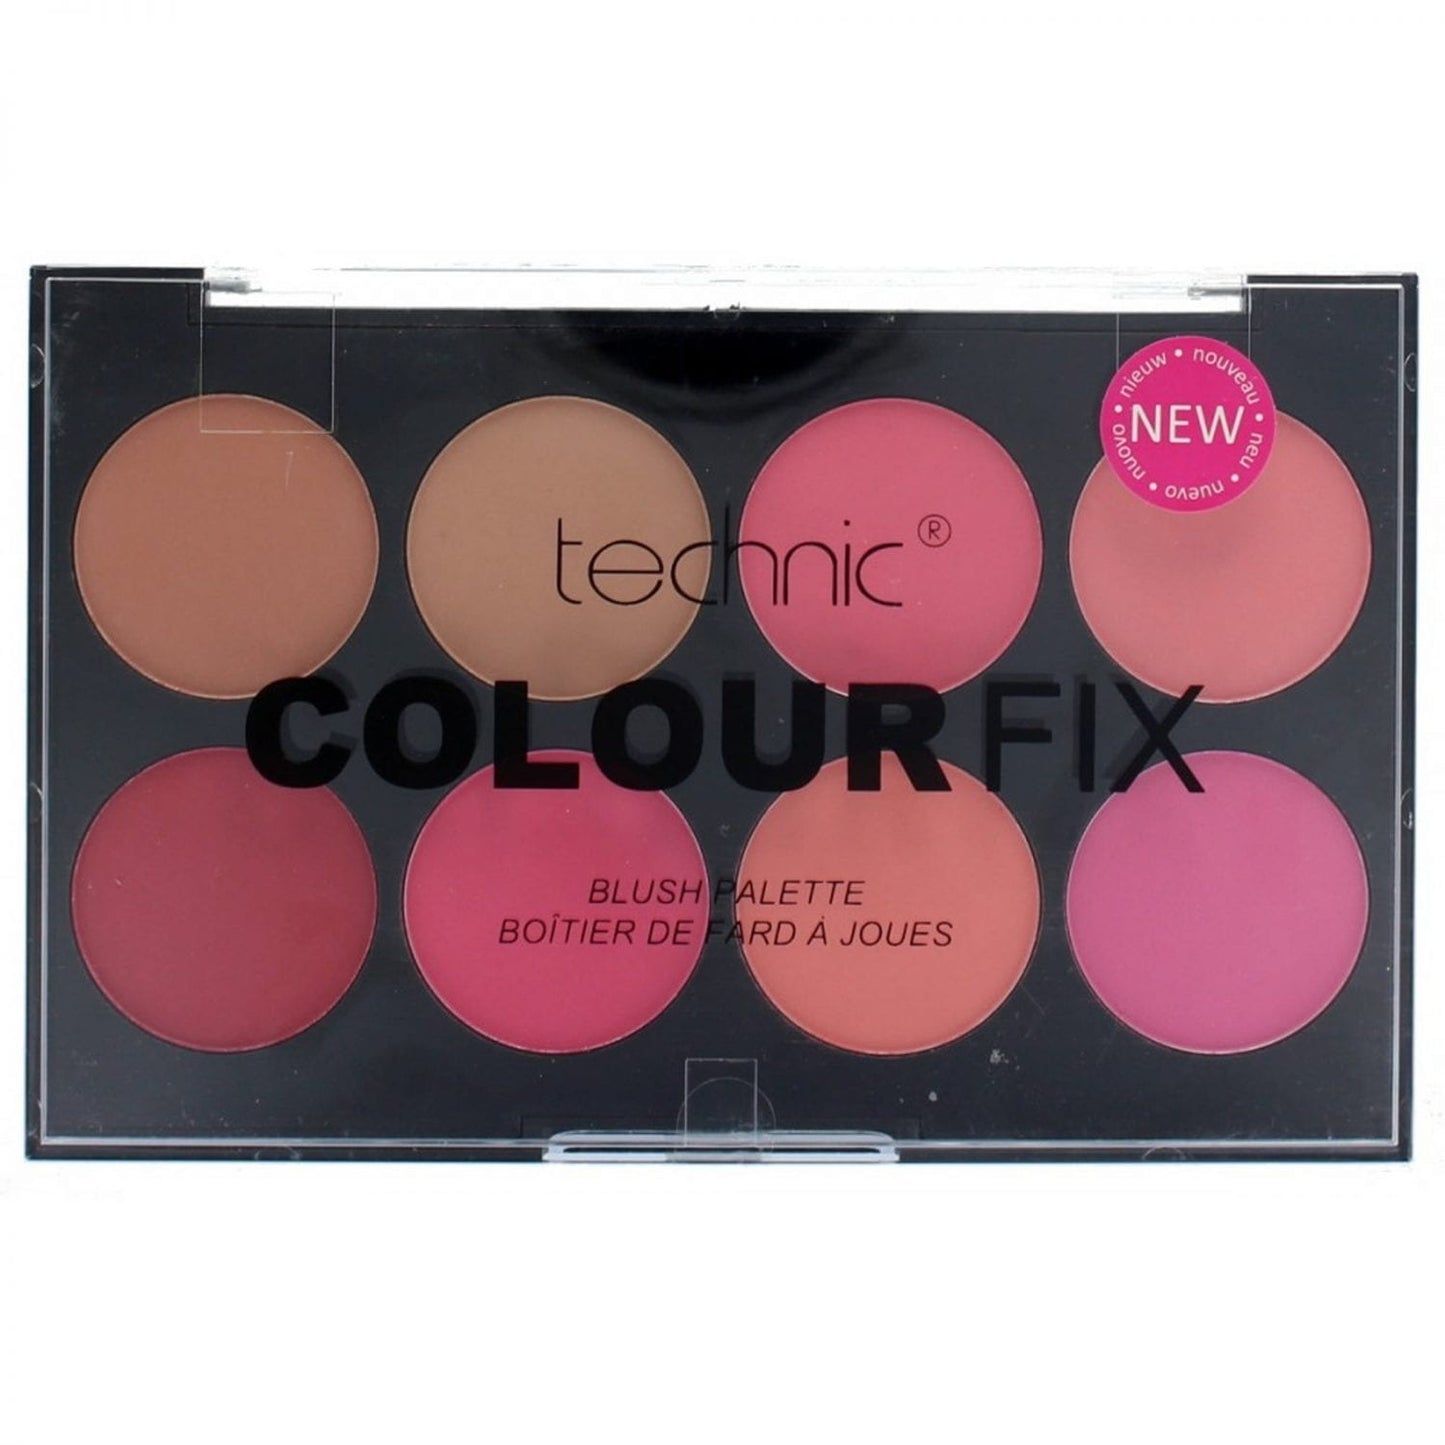 Technic 8 Colour ColourFix Blush Palette